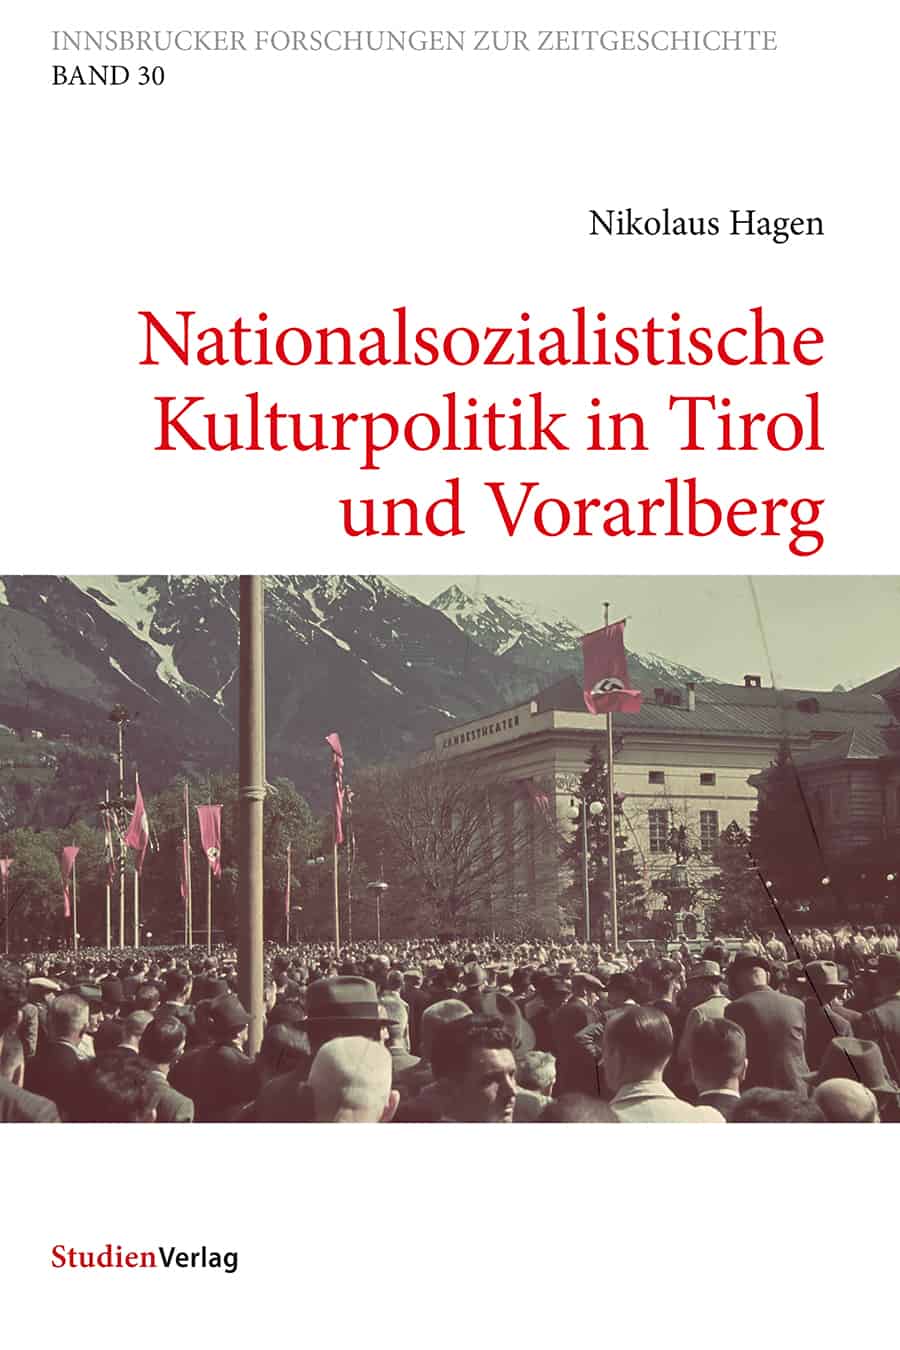 Nikolaus Hagen - Nationalsozialistische